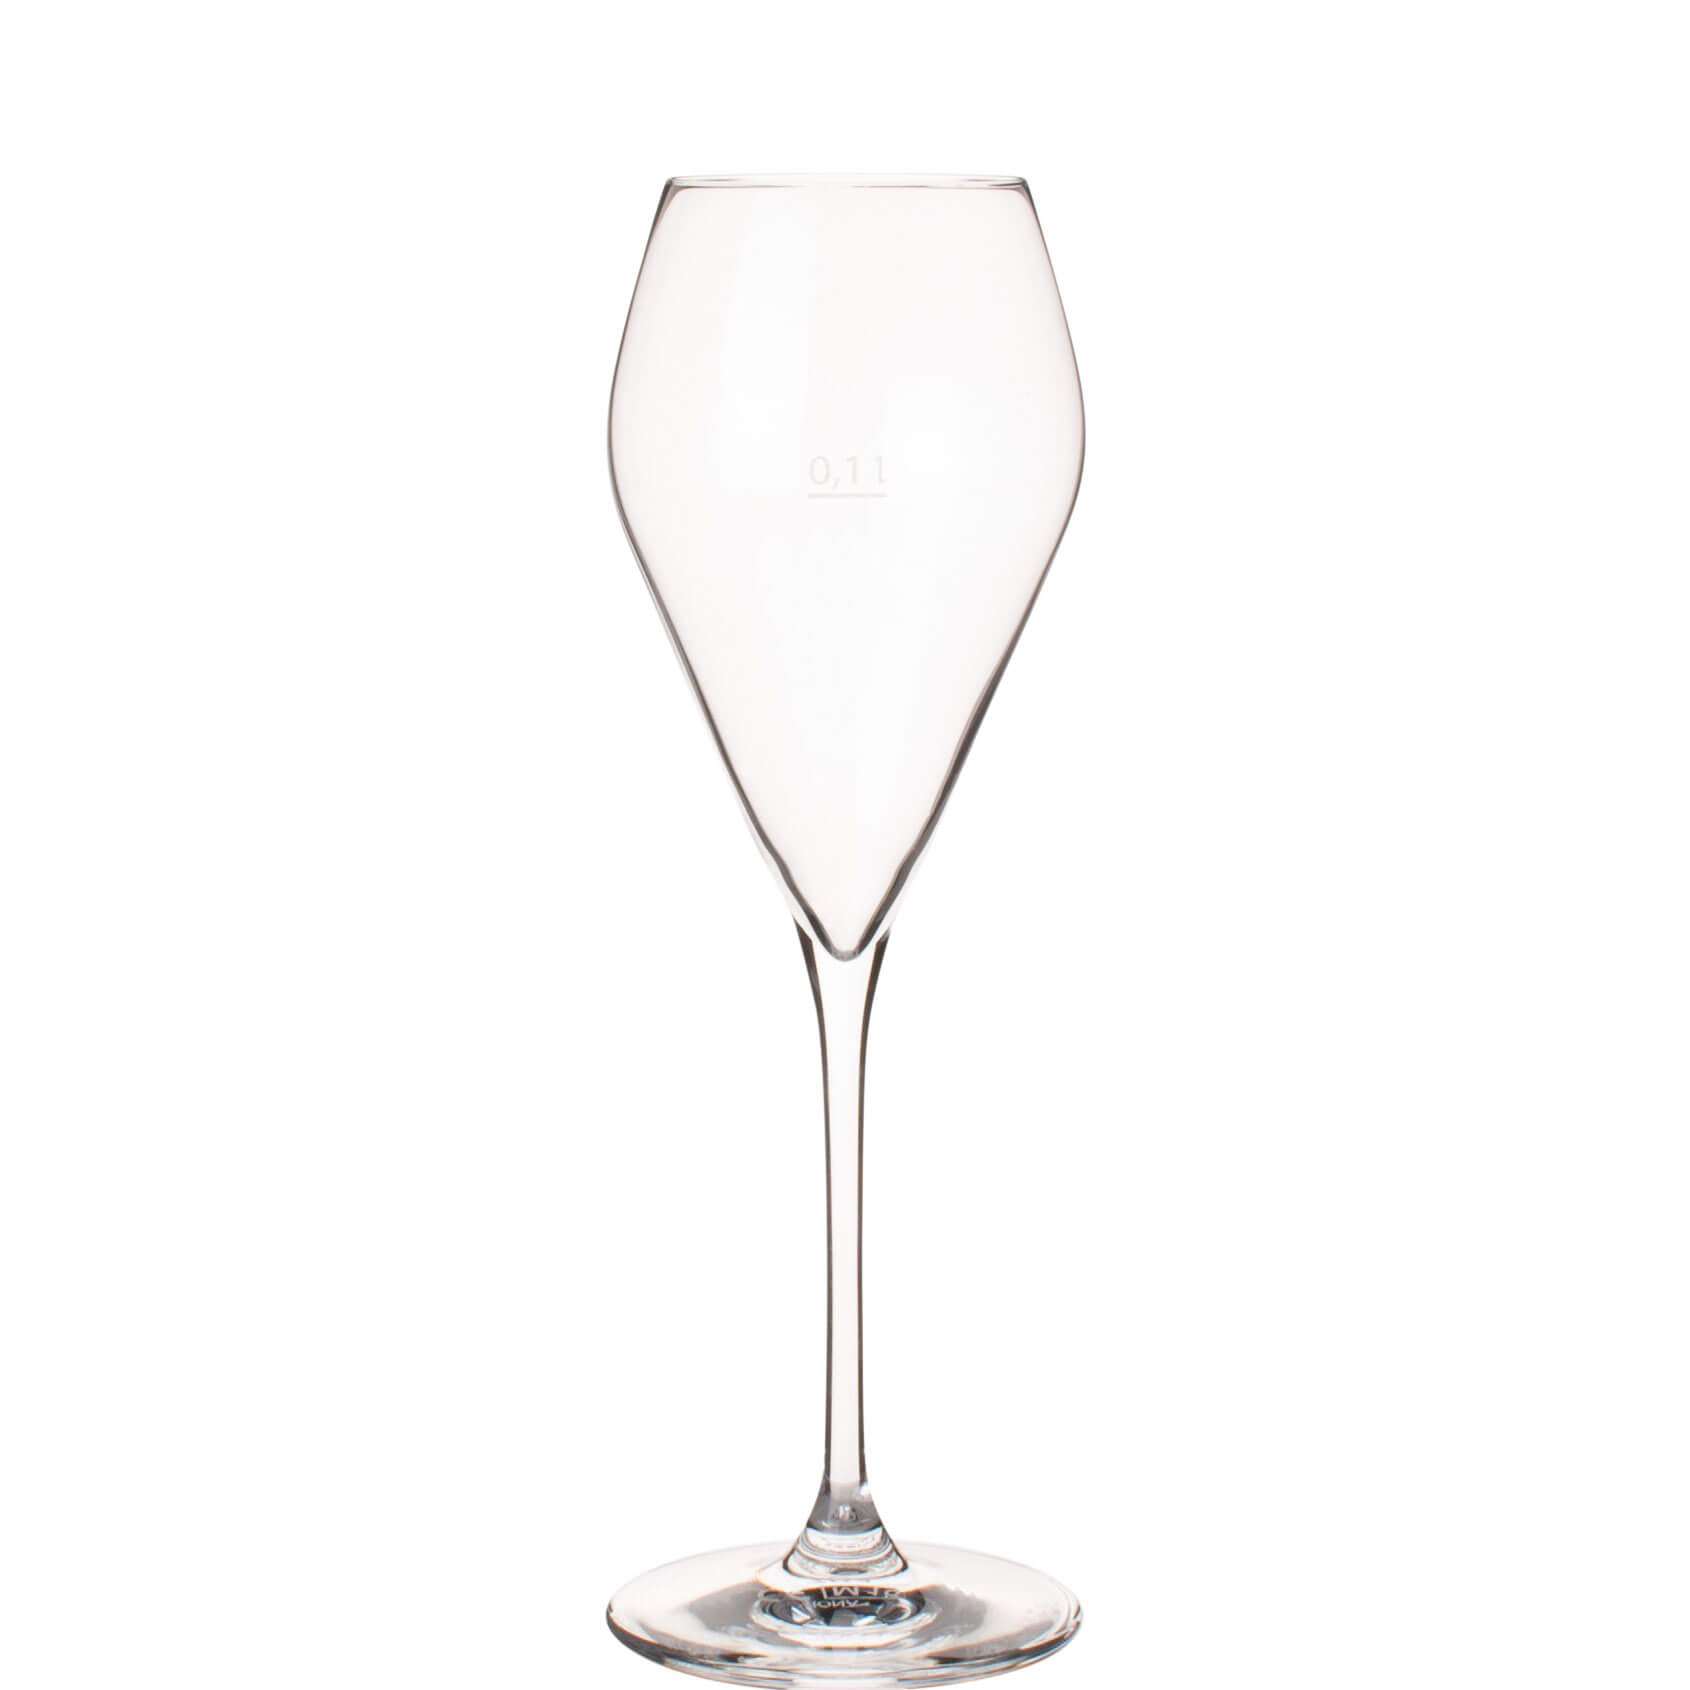 Prosecco glass Mode, Rona - 240ml, 0,1l CM (1 pc.)